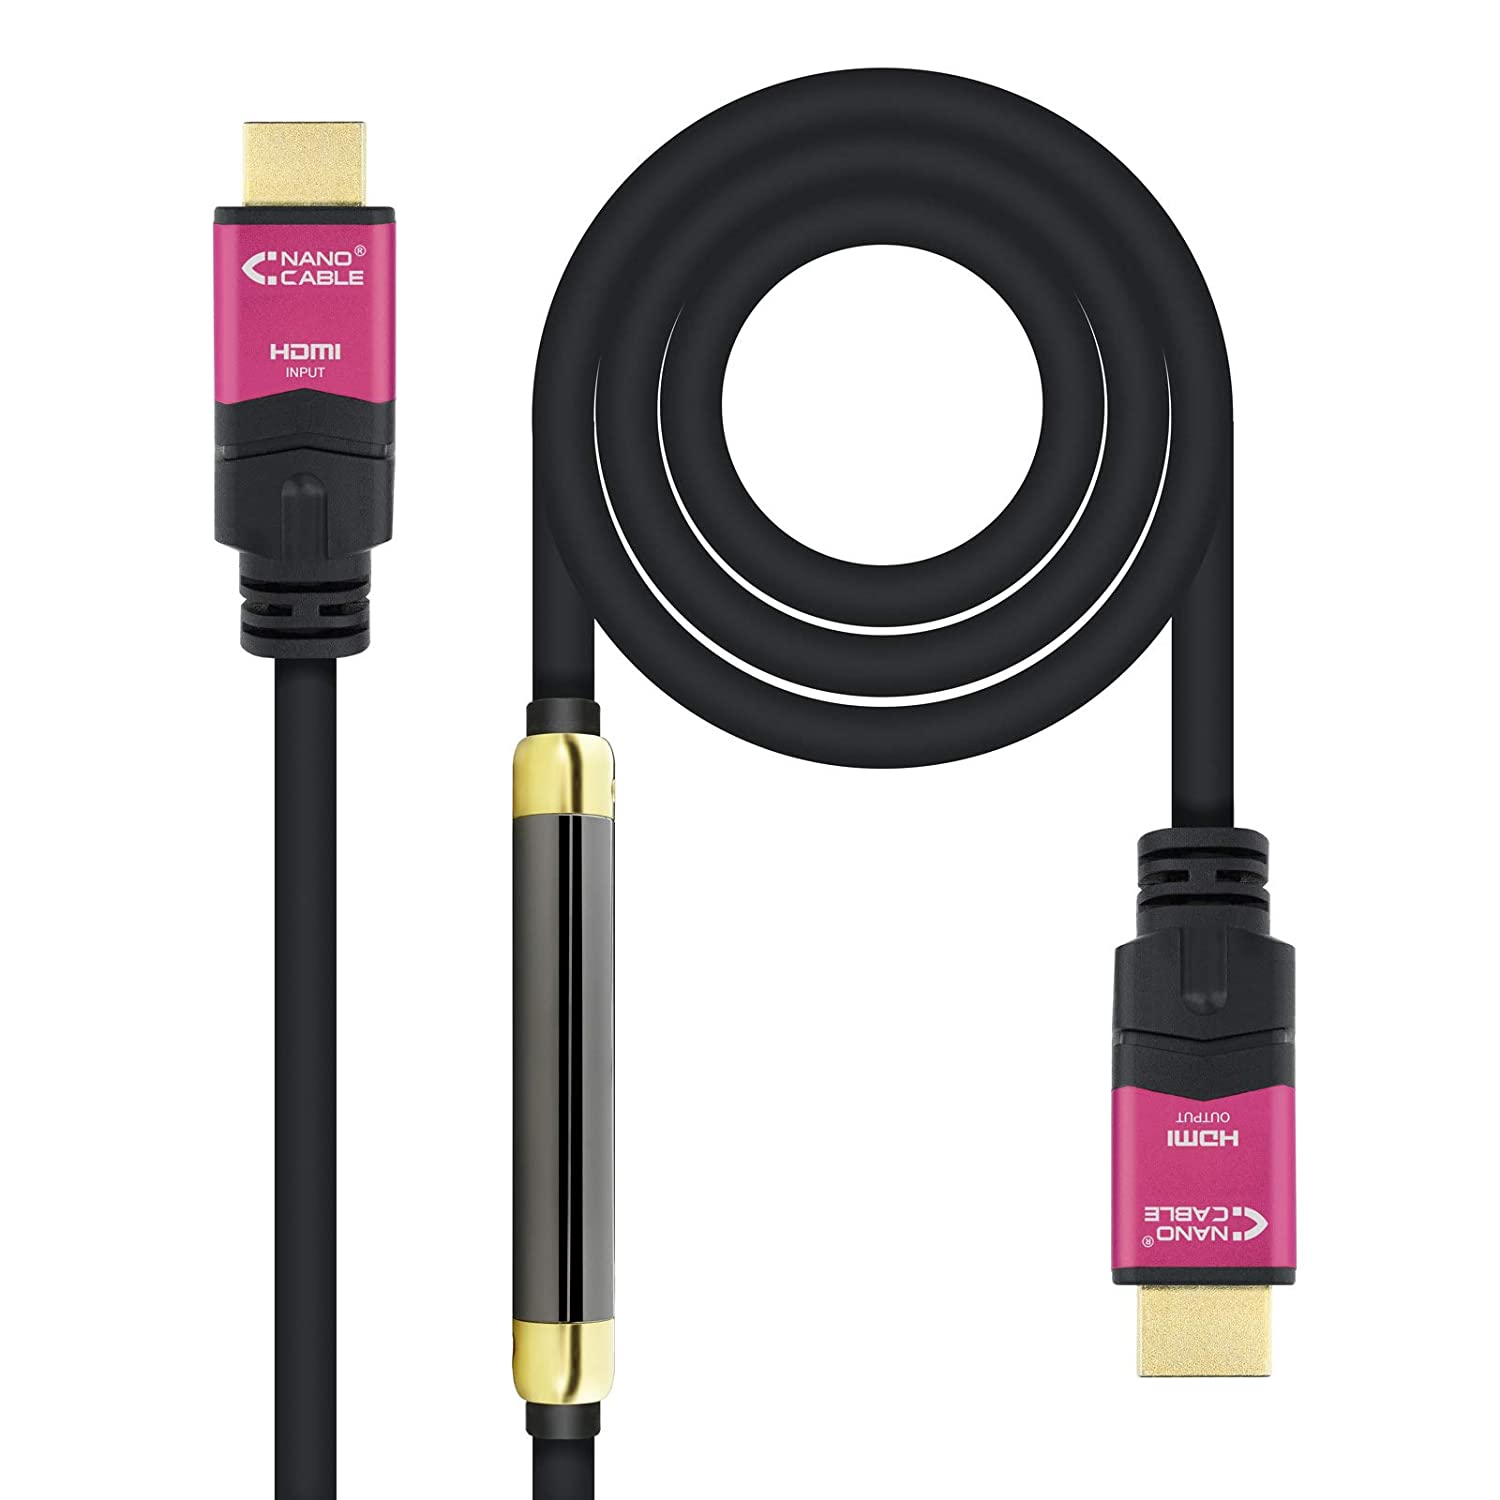 Câble Nanocable HDMI v2.0 Mâle avec Répéteur vers HDMI v2.0 Mâle 20m - 4K@60Hz 18Gbps - Haute Vitesse - Couleur Noir/Rose